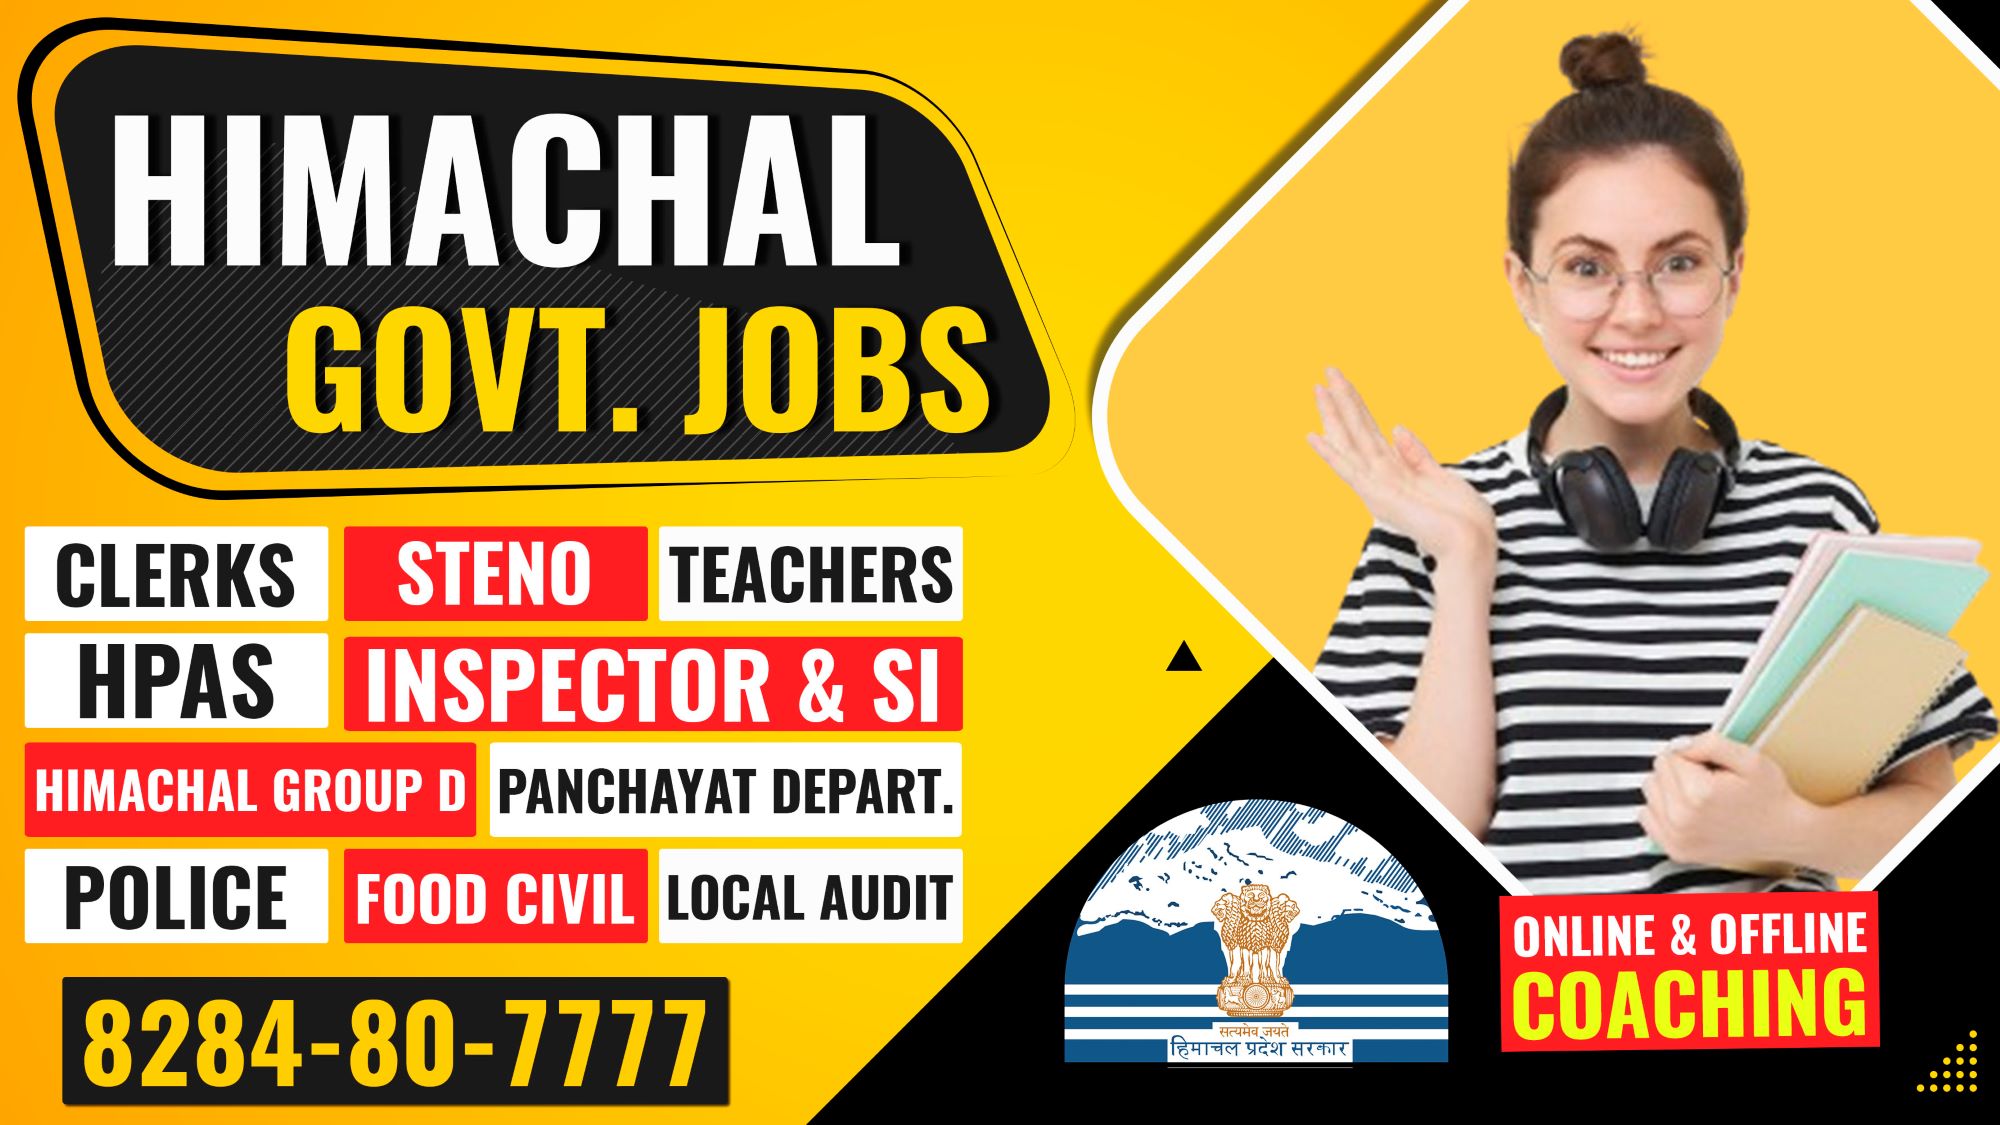 Himachal govt jobs coaching in Chandigarh